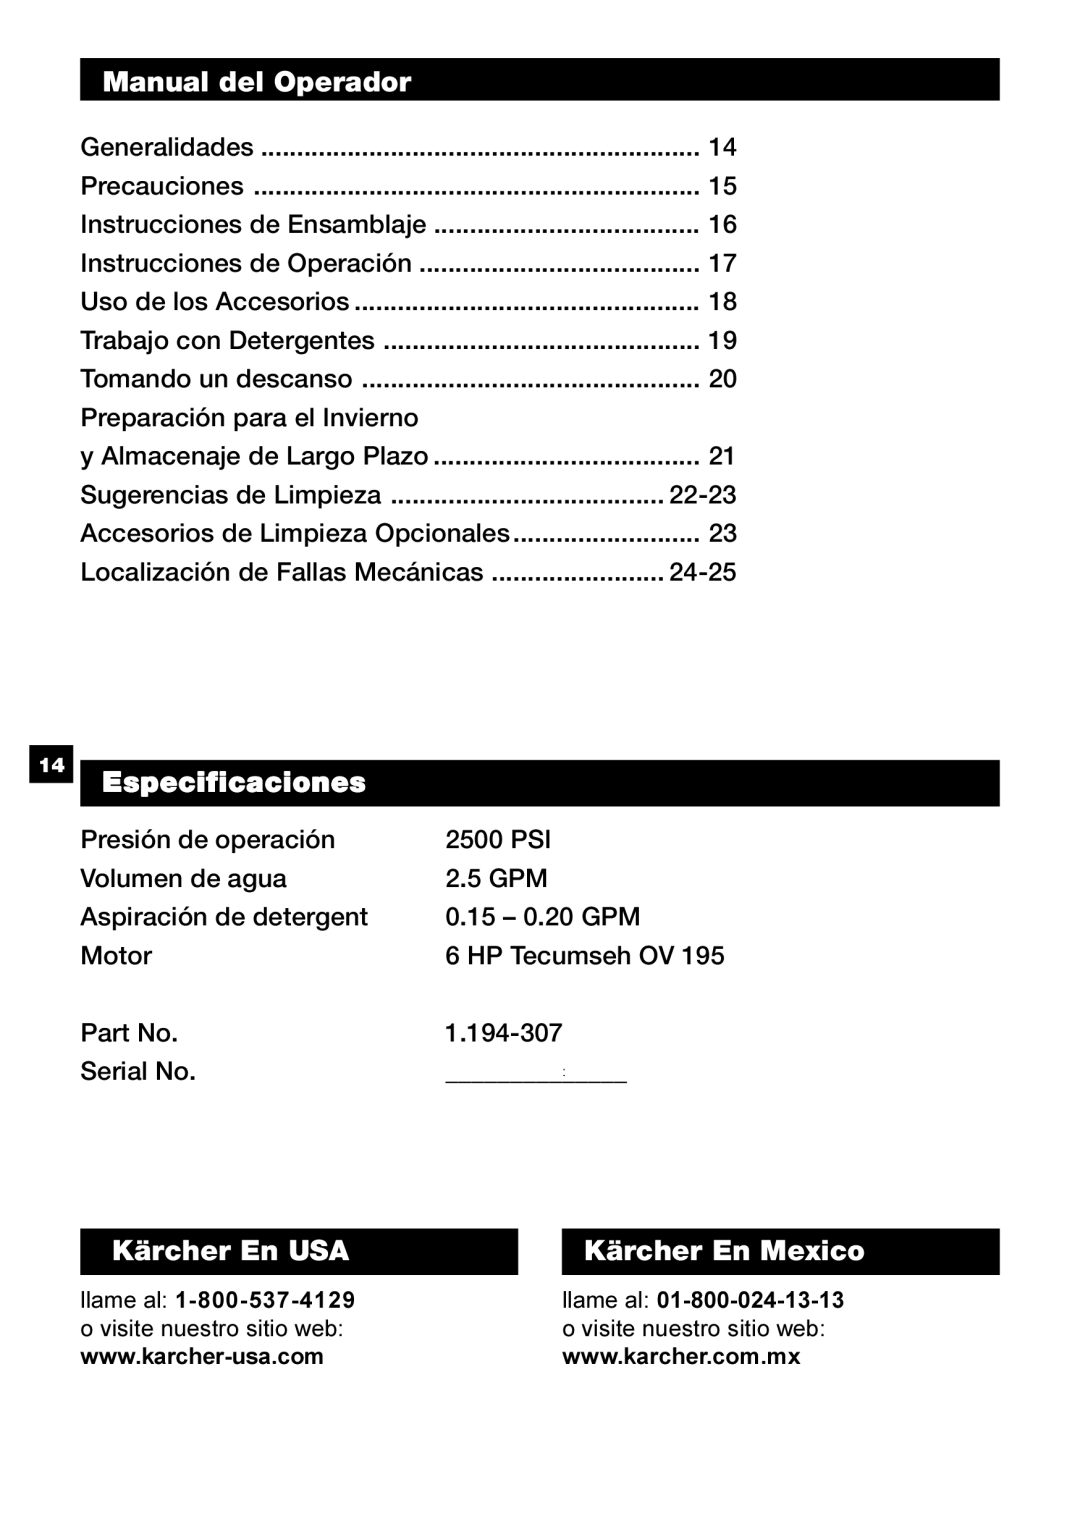 Karcher G 2500 HT manual Manual del Operador, Especificaciones, Kärcher En USA, Kärcher En Mexico 